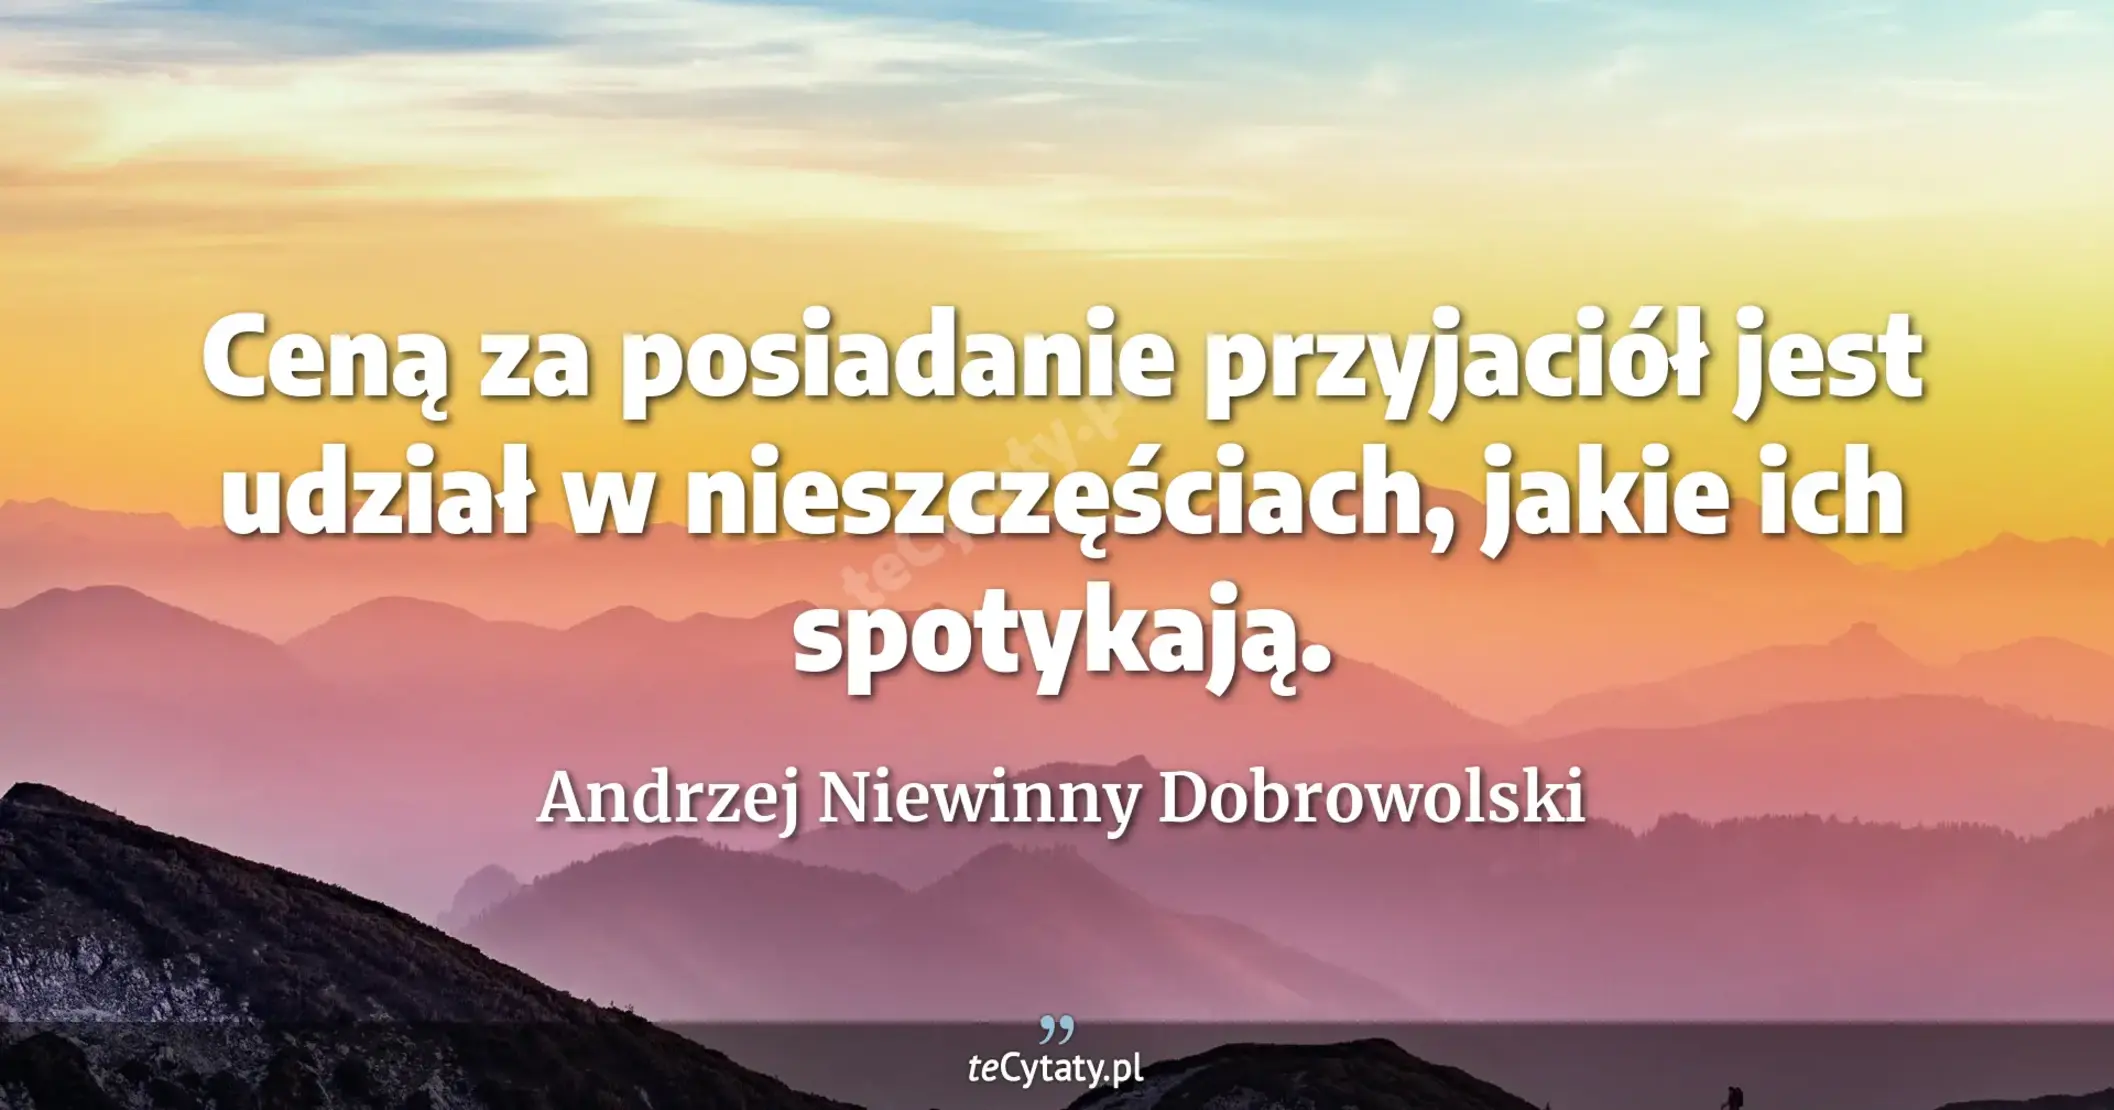 Ceną za posiadanie przyjaciół jest udział w nieszczęściach, jakie ich spotykają. - Andrzej Niewinny Dobrowolski